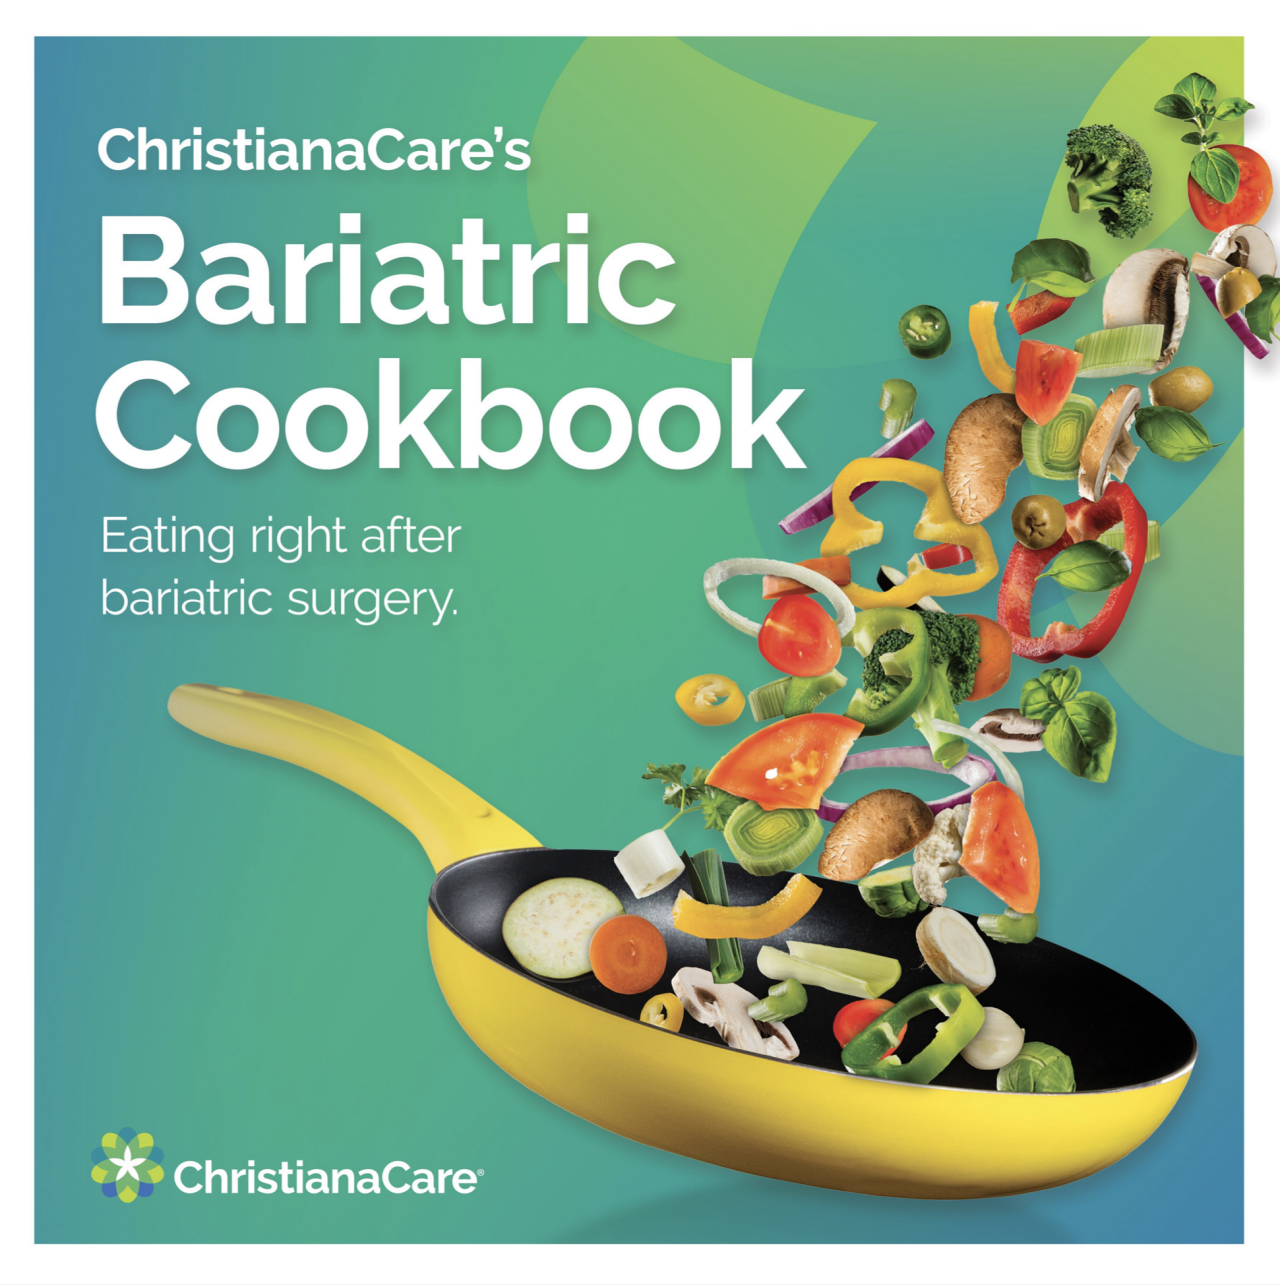 Arte de la portada del Libro de cocina bariátrica de ChristianaCare